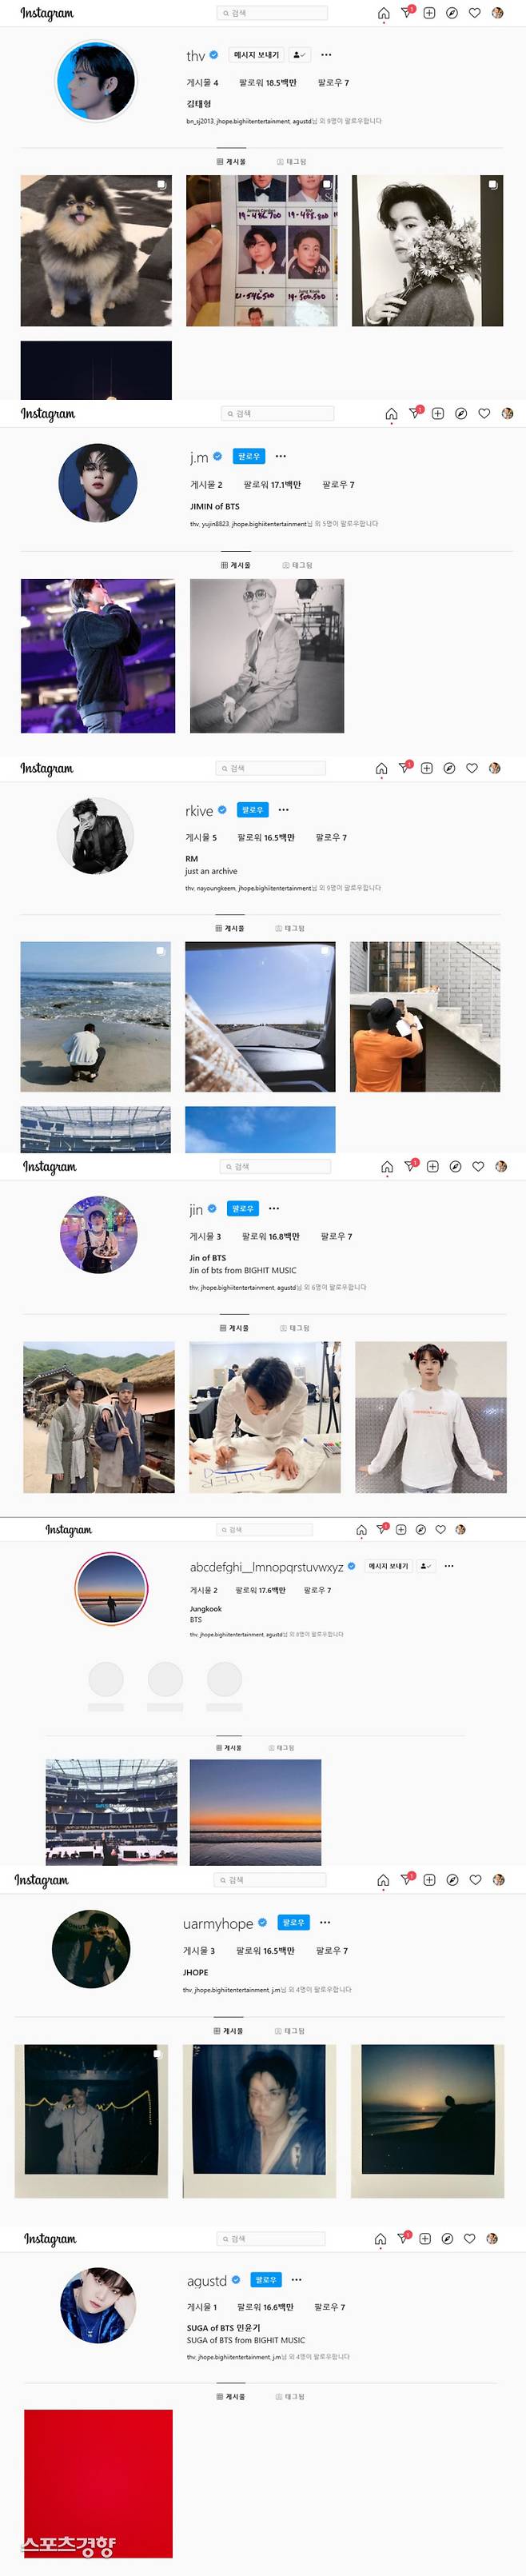 방탄소년단이 데뷔8년만에 개인 인스타그램을 개설했다. 사진|각 SNS캡처